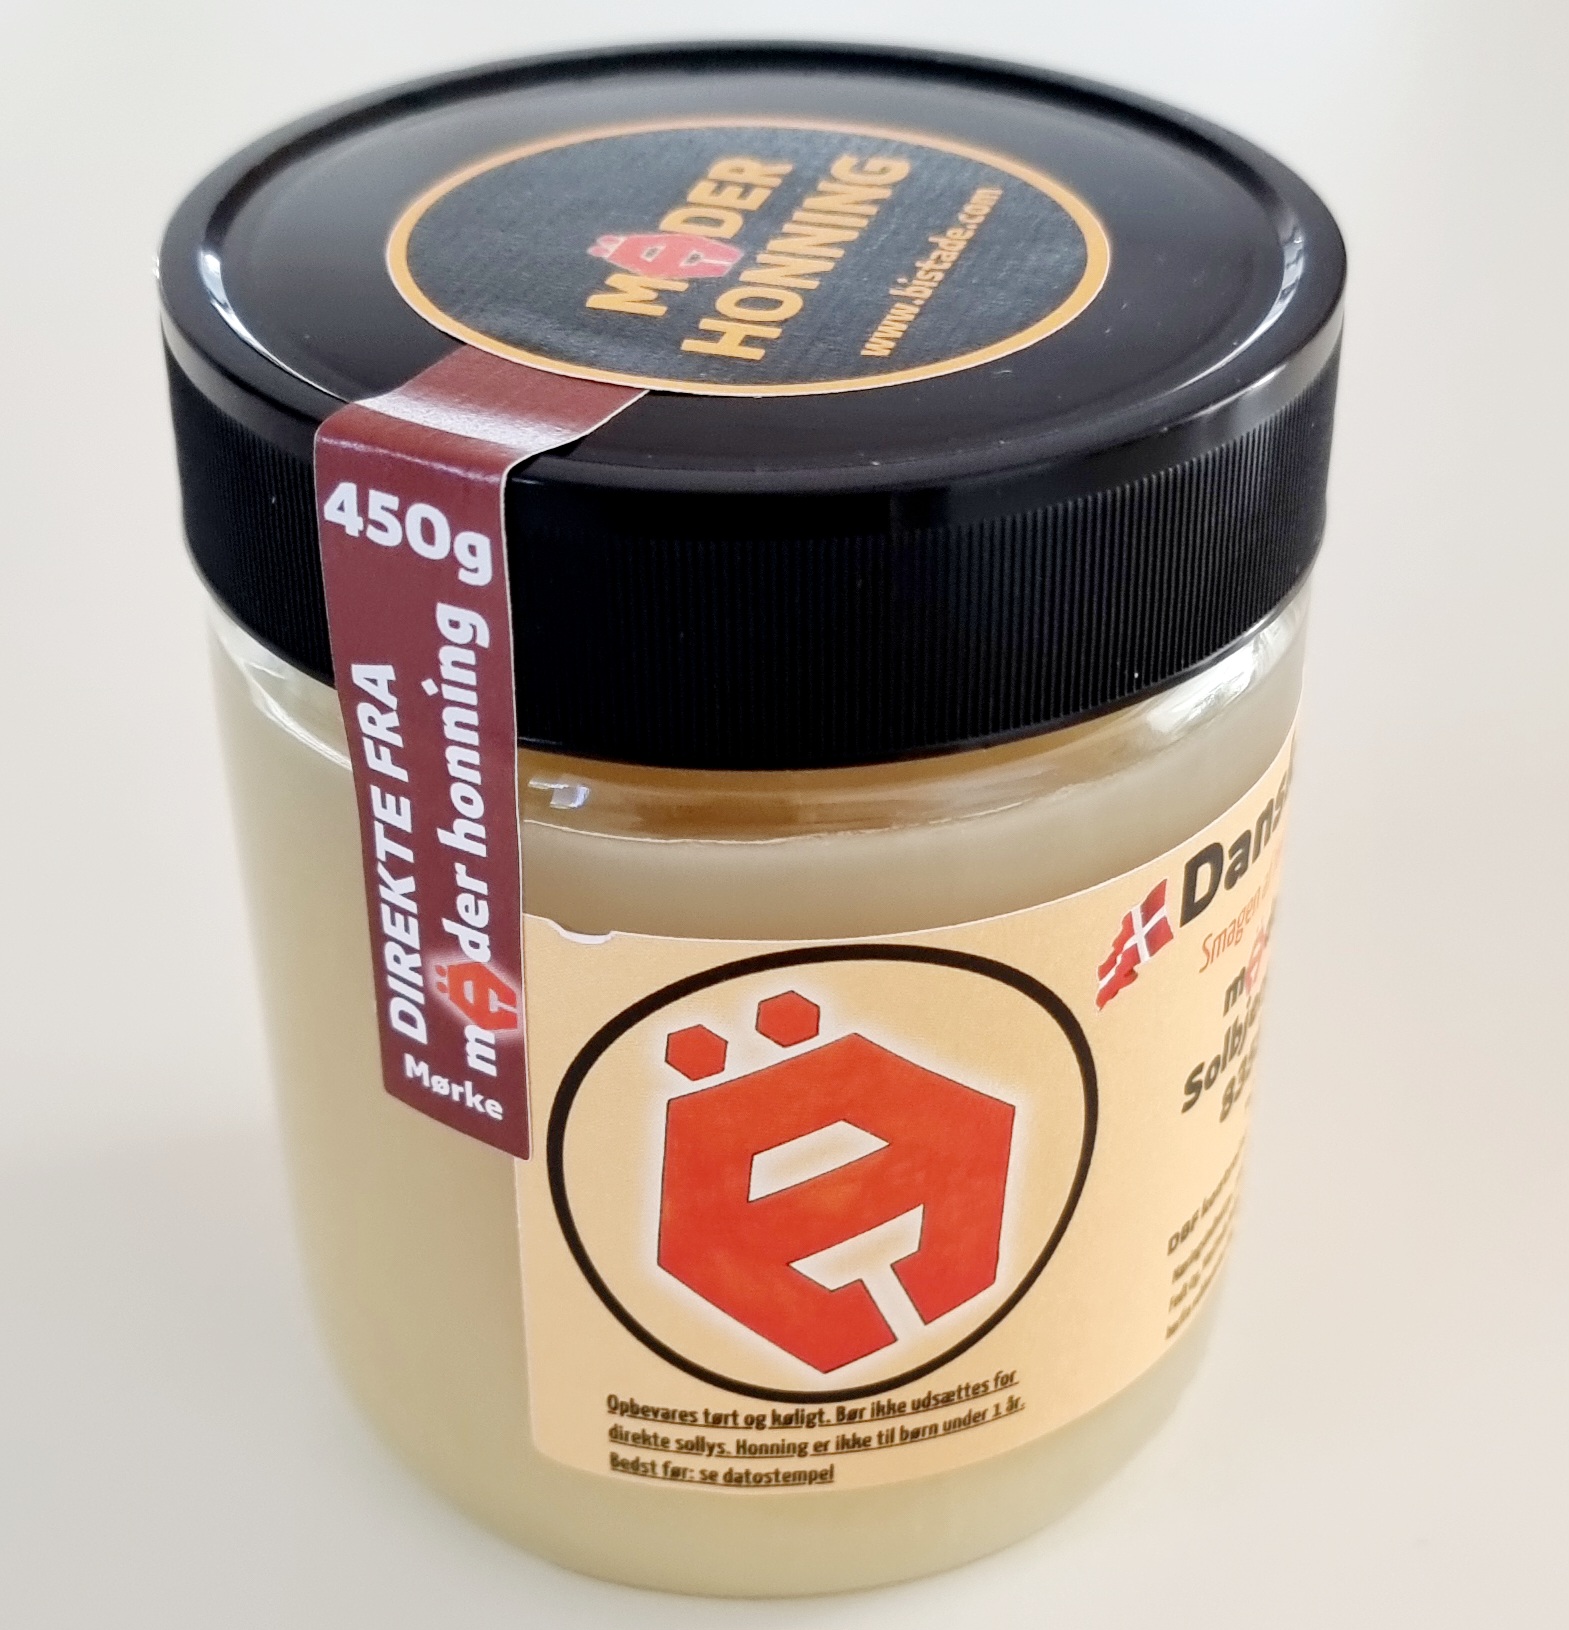 Dansk honning avlet i egen bigård. Mäder Honning 450g Forårshonning fra Mørke